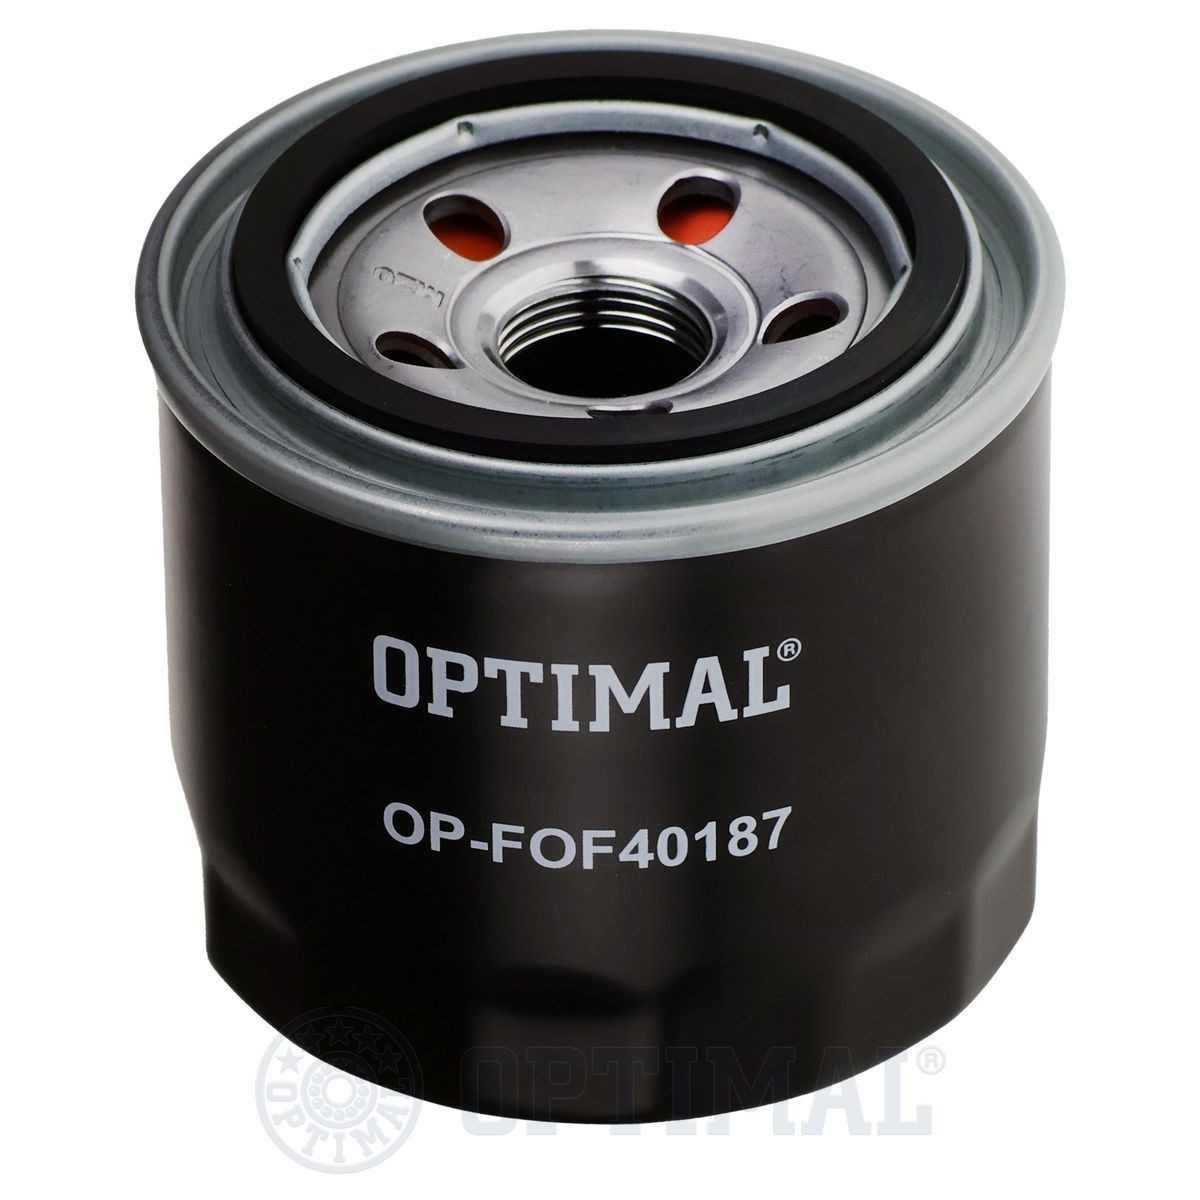 OPTIMAL OP-FOF40187 Oil filter SMD136466V